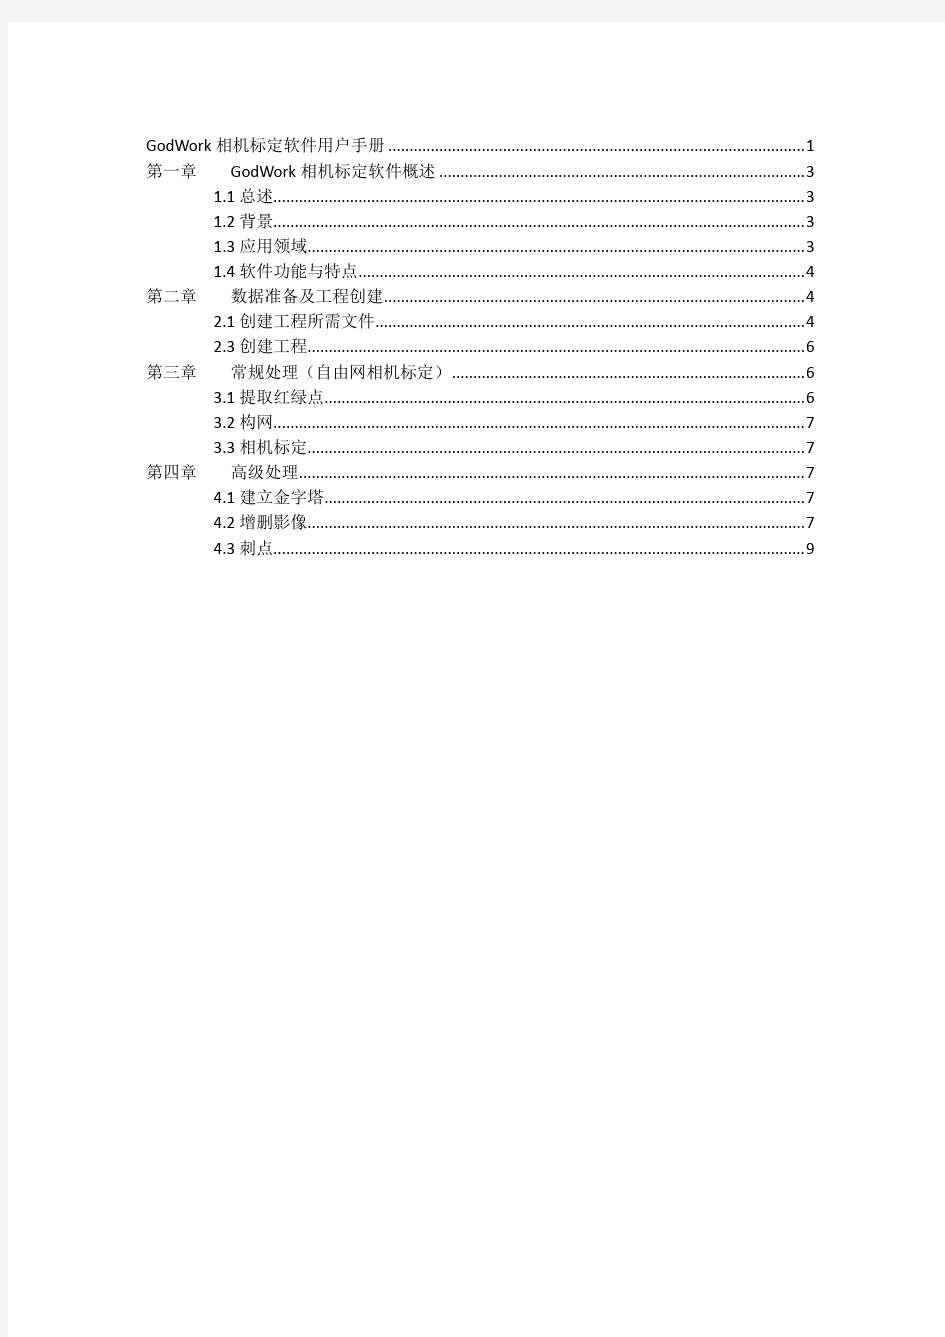 天工相机标定软件用户手册.pdf